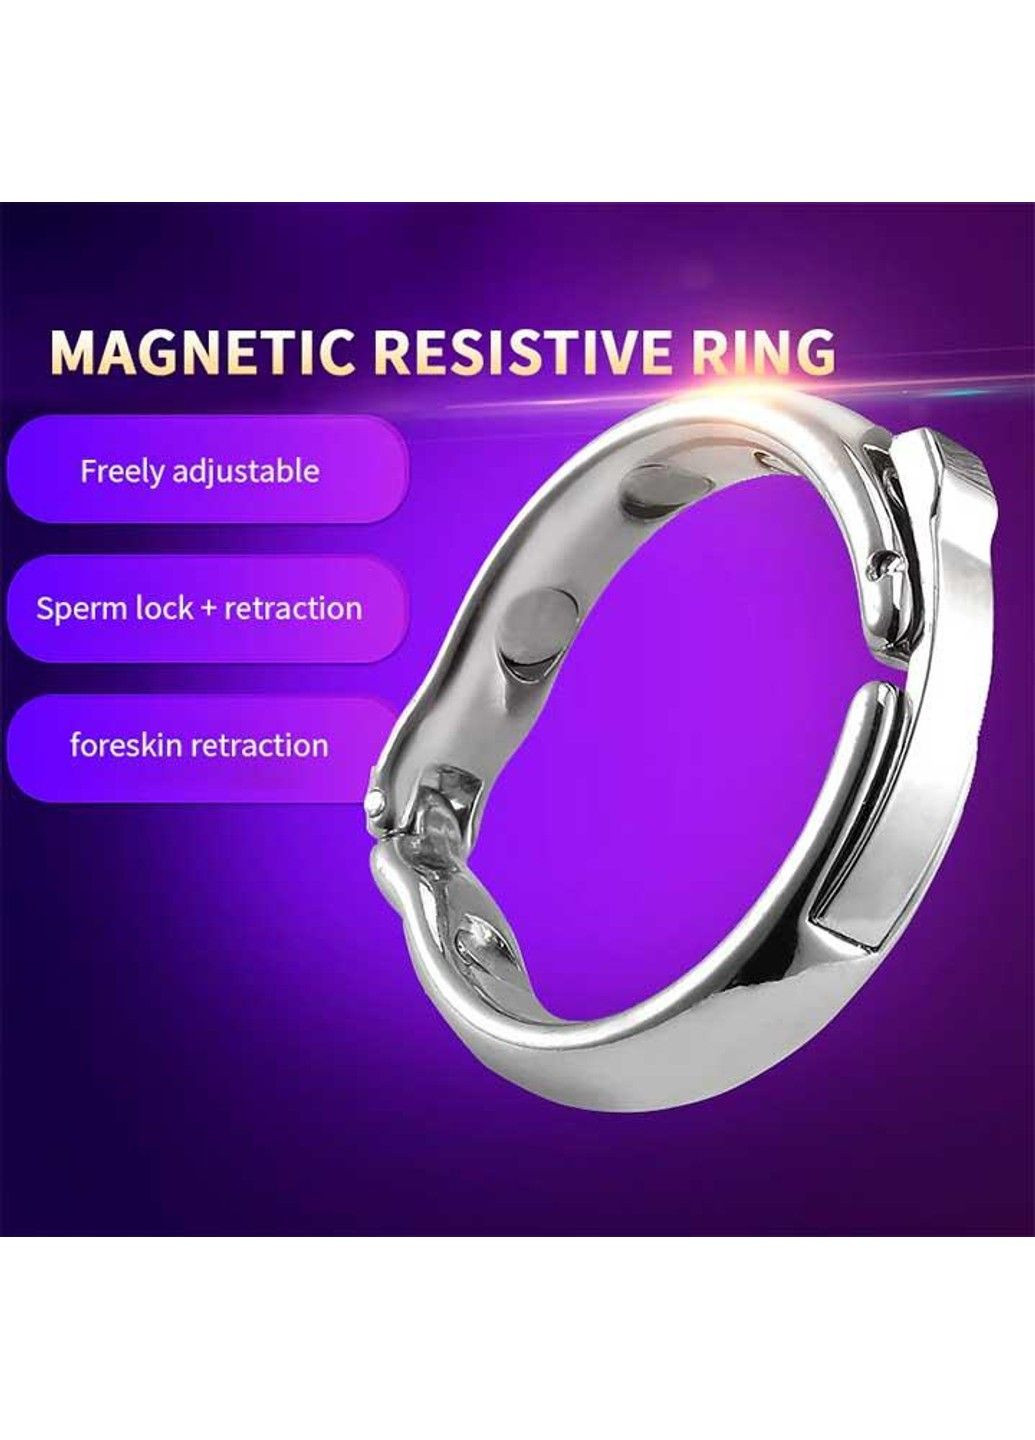 Серебристая магнитное эрекционное кольцо "Alloy" No Brand (288538386)